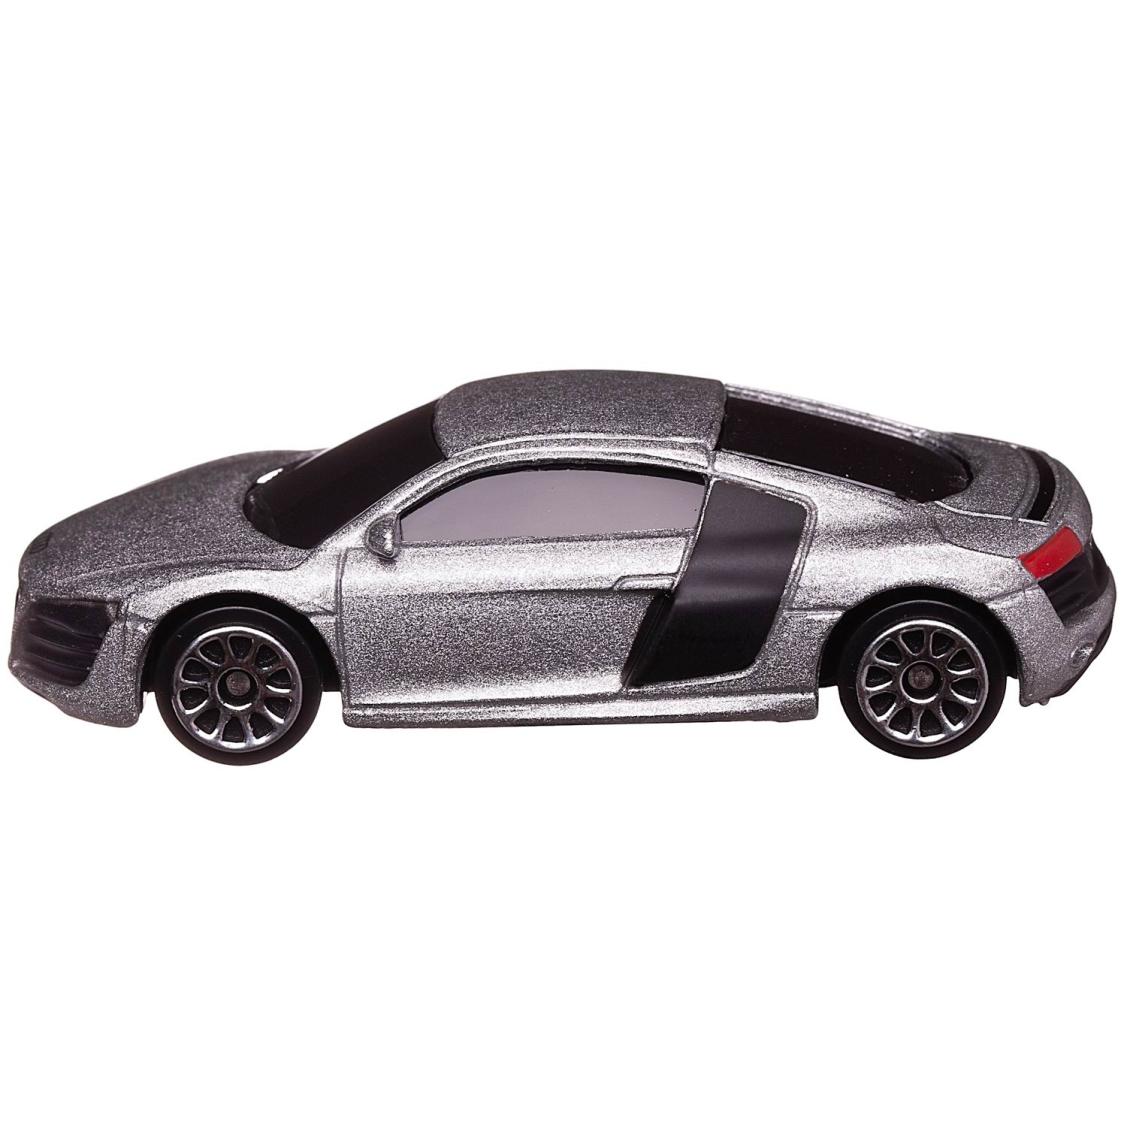 Машинка металлическая Uni-Fortune RMZ City 1:64 Audi R8 V10, без механизмов, (серебристый)